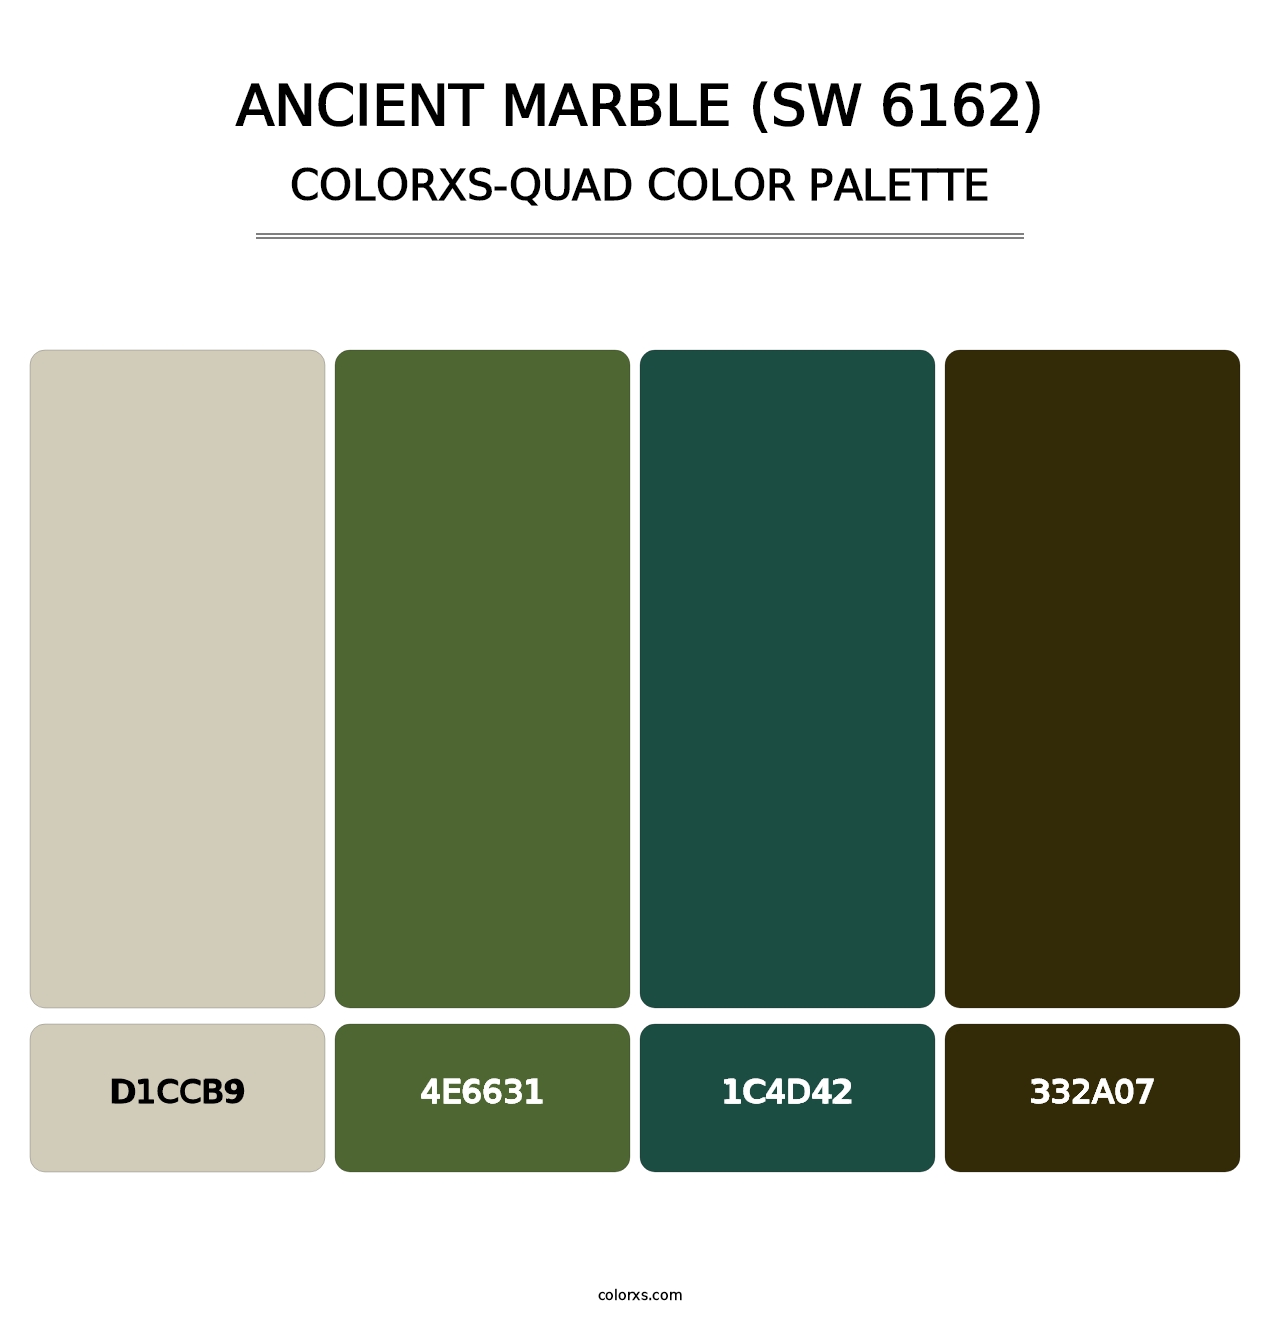 Ancient Marble (SW 6162) - Colorxs Quad Palette